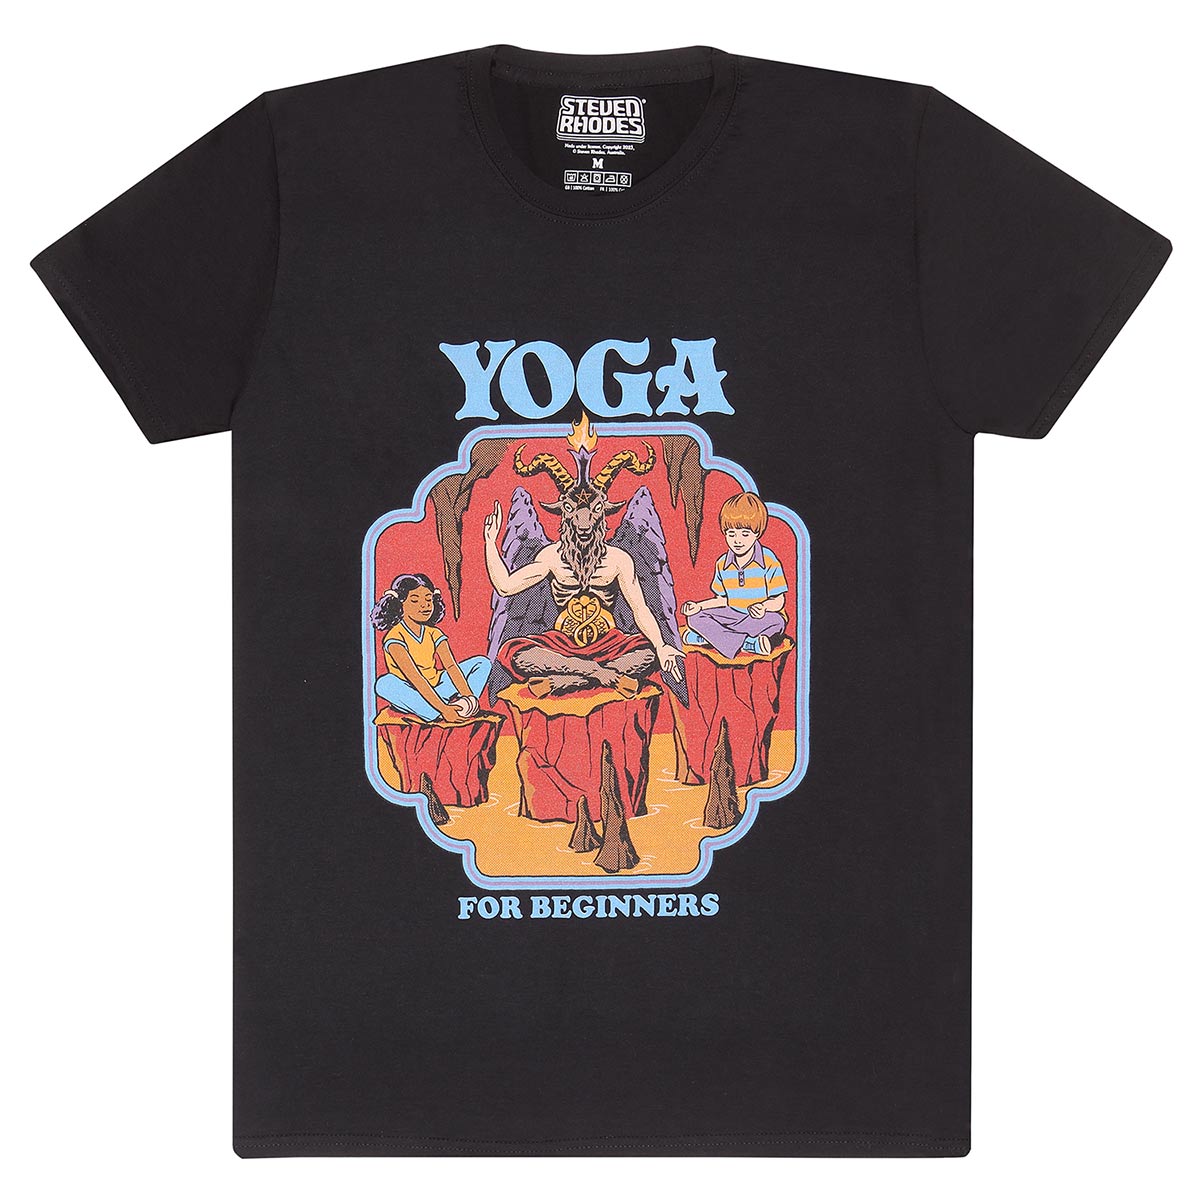 Steven Rhodes Yoga For Beginners T-Shirt